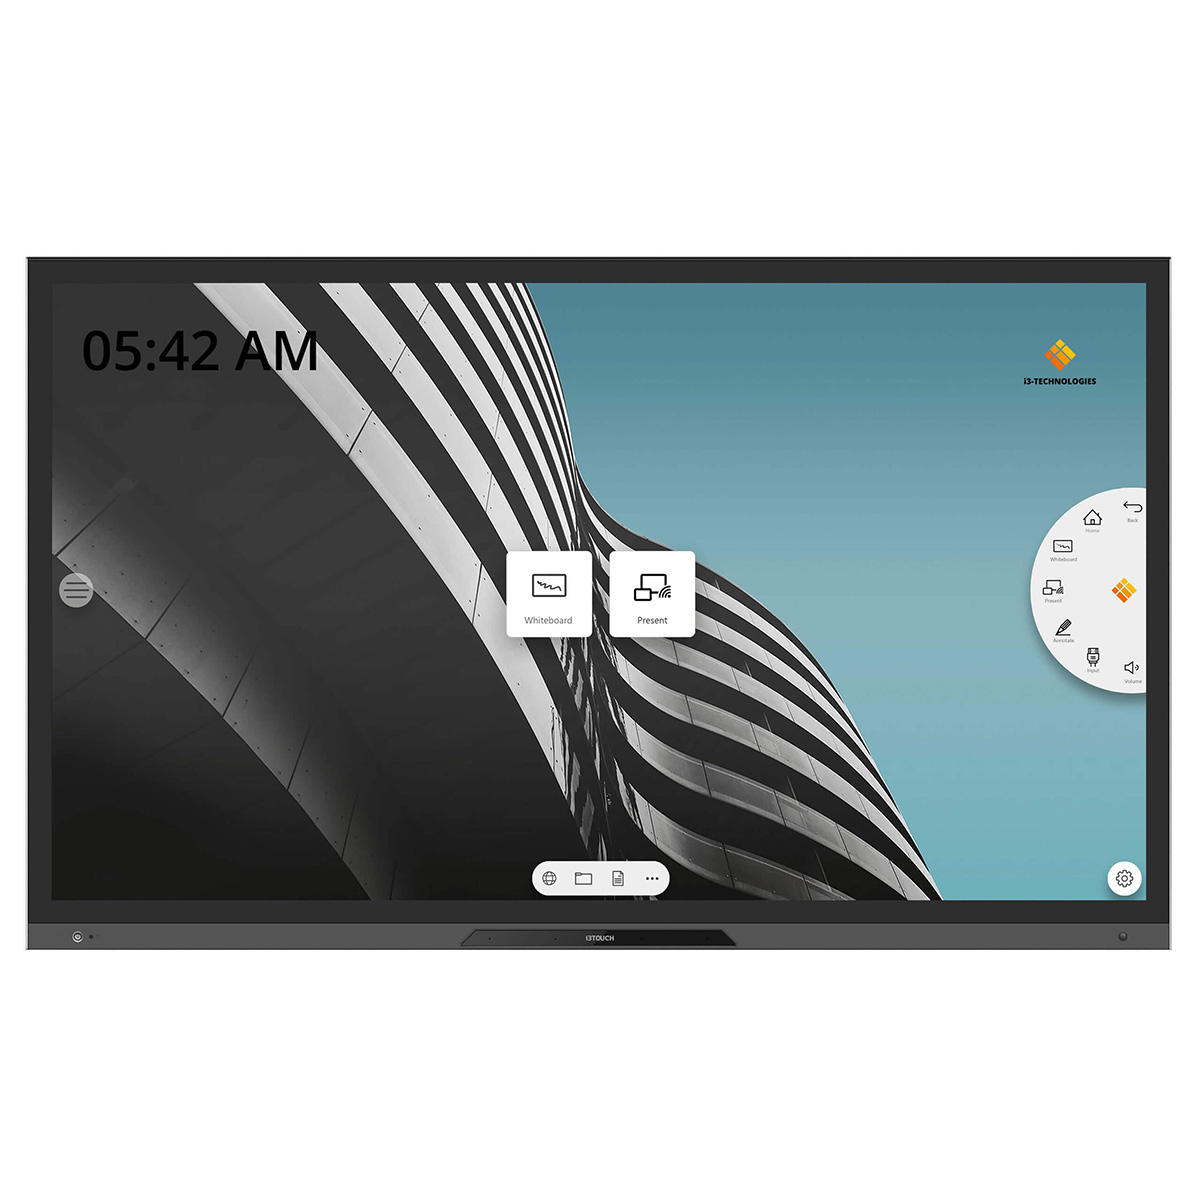 i3TOUCH PX86 interaktiver Touchscreen in 86 Zoll mit 4K-Auflösung und kapazitivem Display